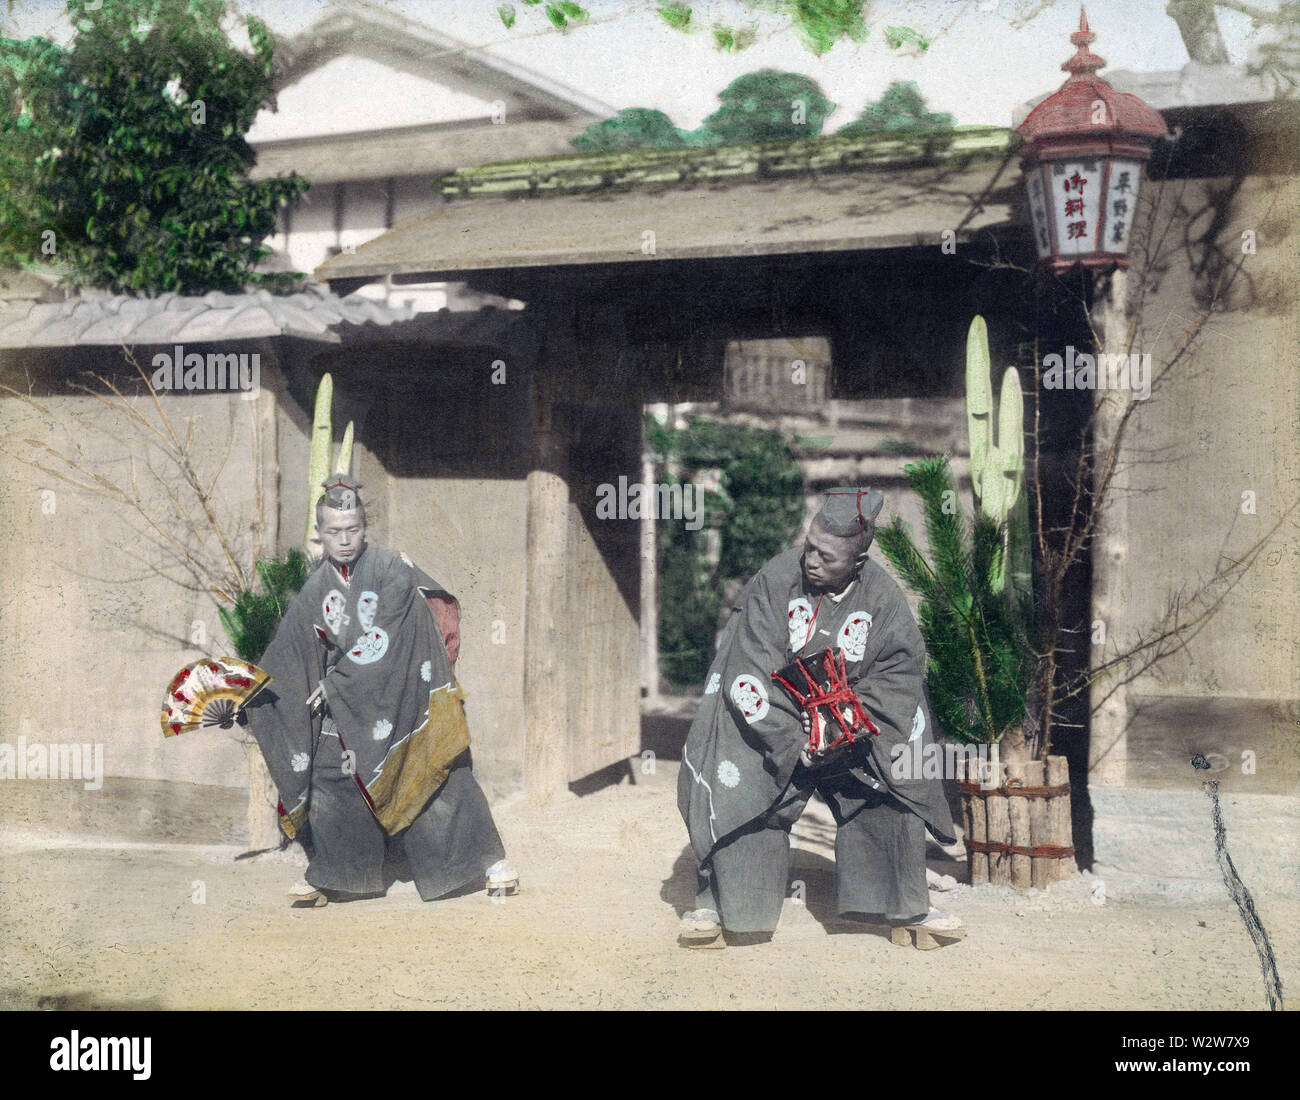 [1890s Japan - Japanische neues Jahr Tanz] - zwei Männer führen einen Tanz vor einem Tor als Teil des neuen Jahres Feiern während der Meiji Periode (1868-1912). 19 Vintage albumen Foto. Stockfoto